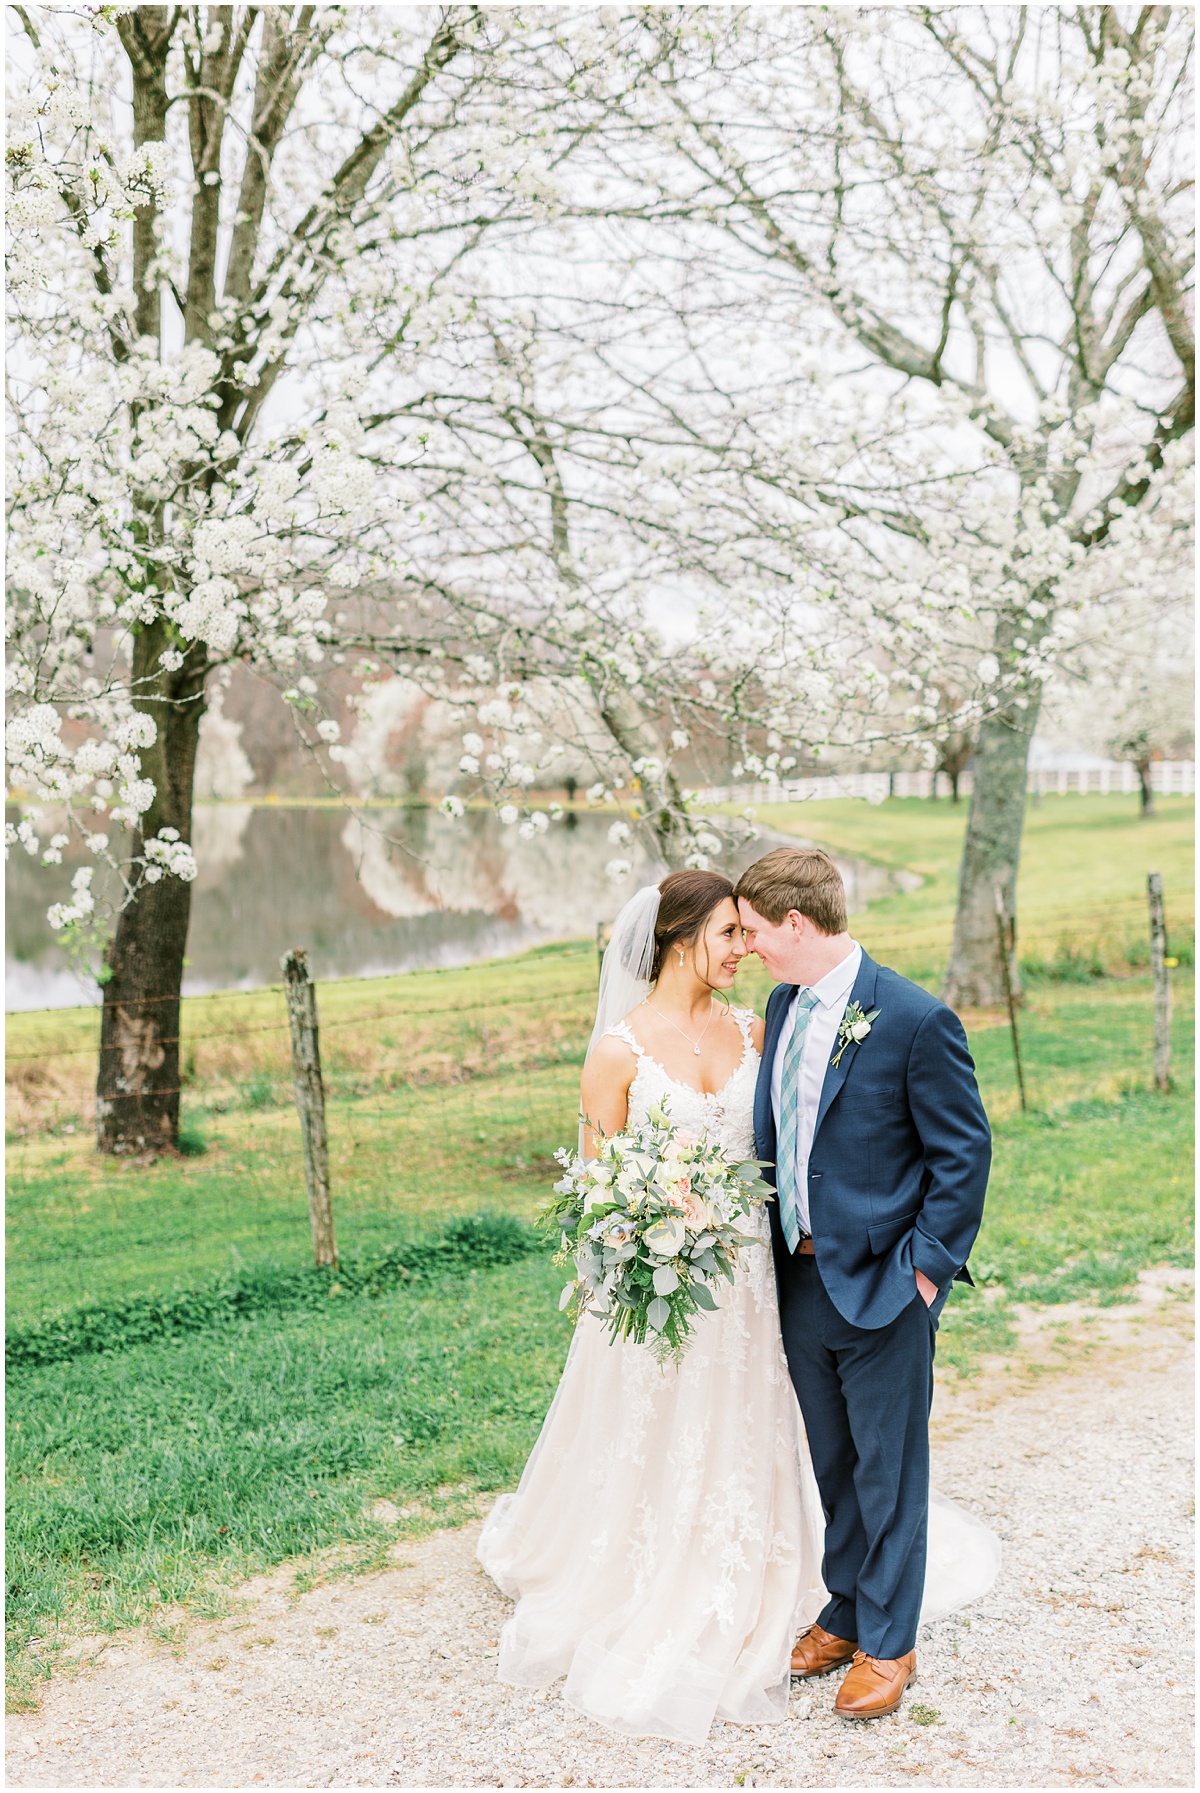 Spring blossom bride and groom photos